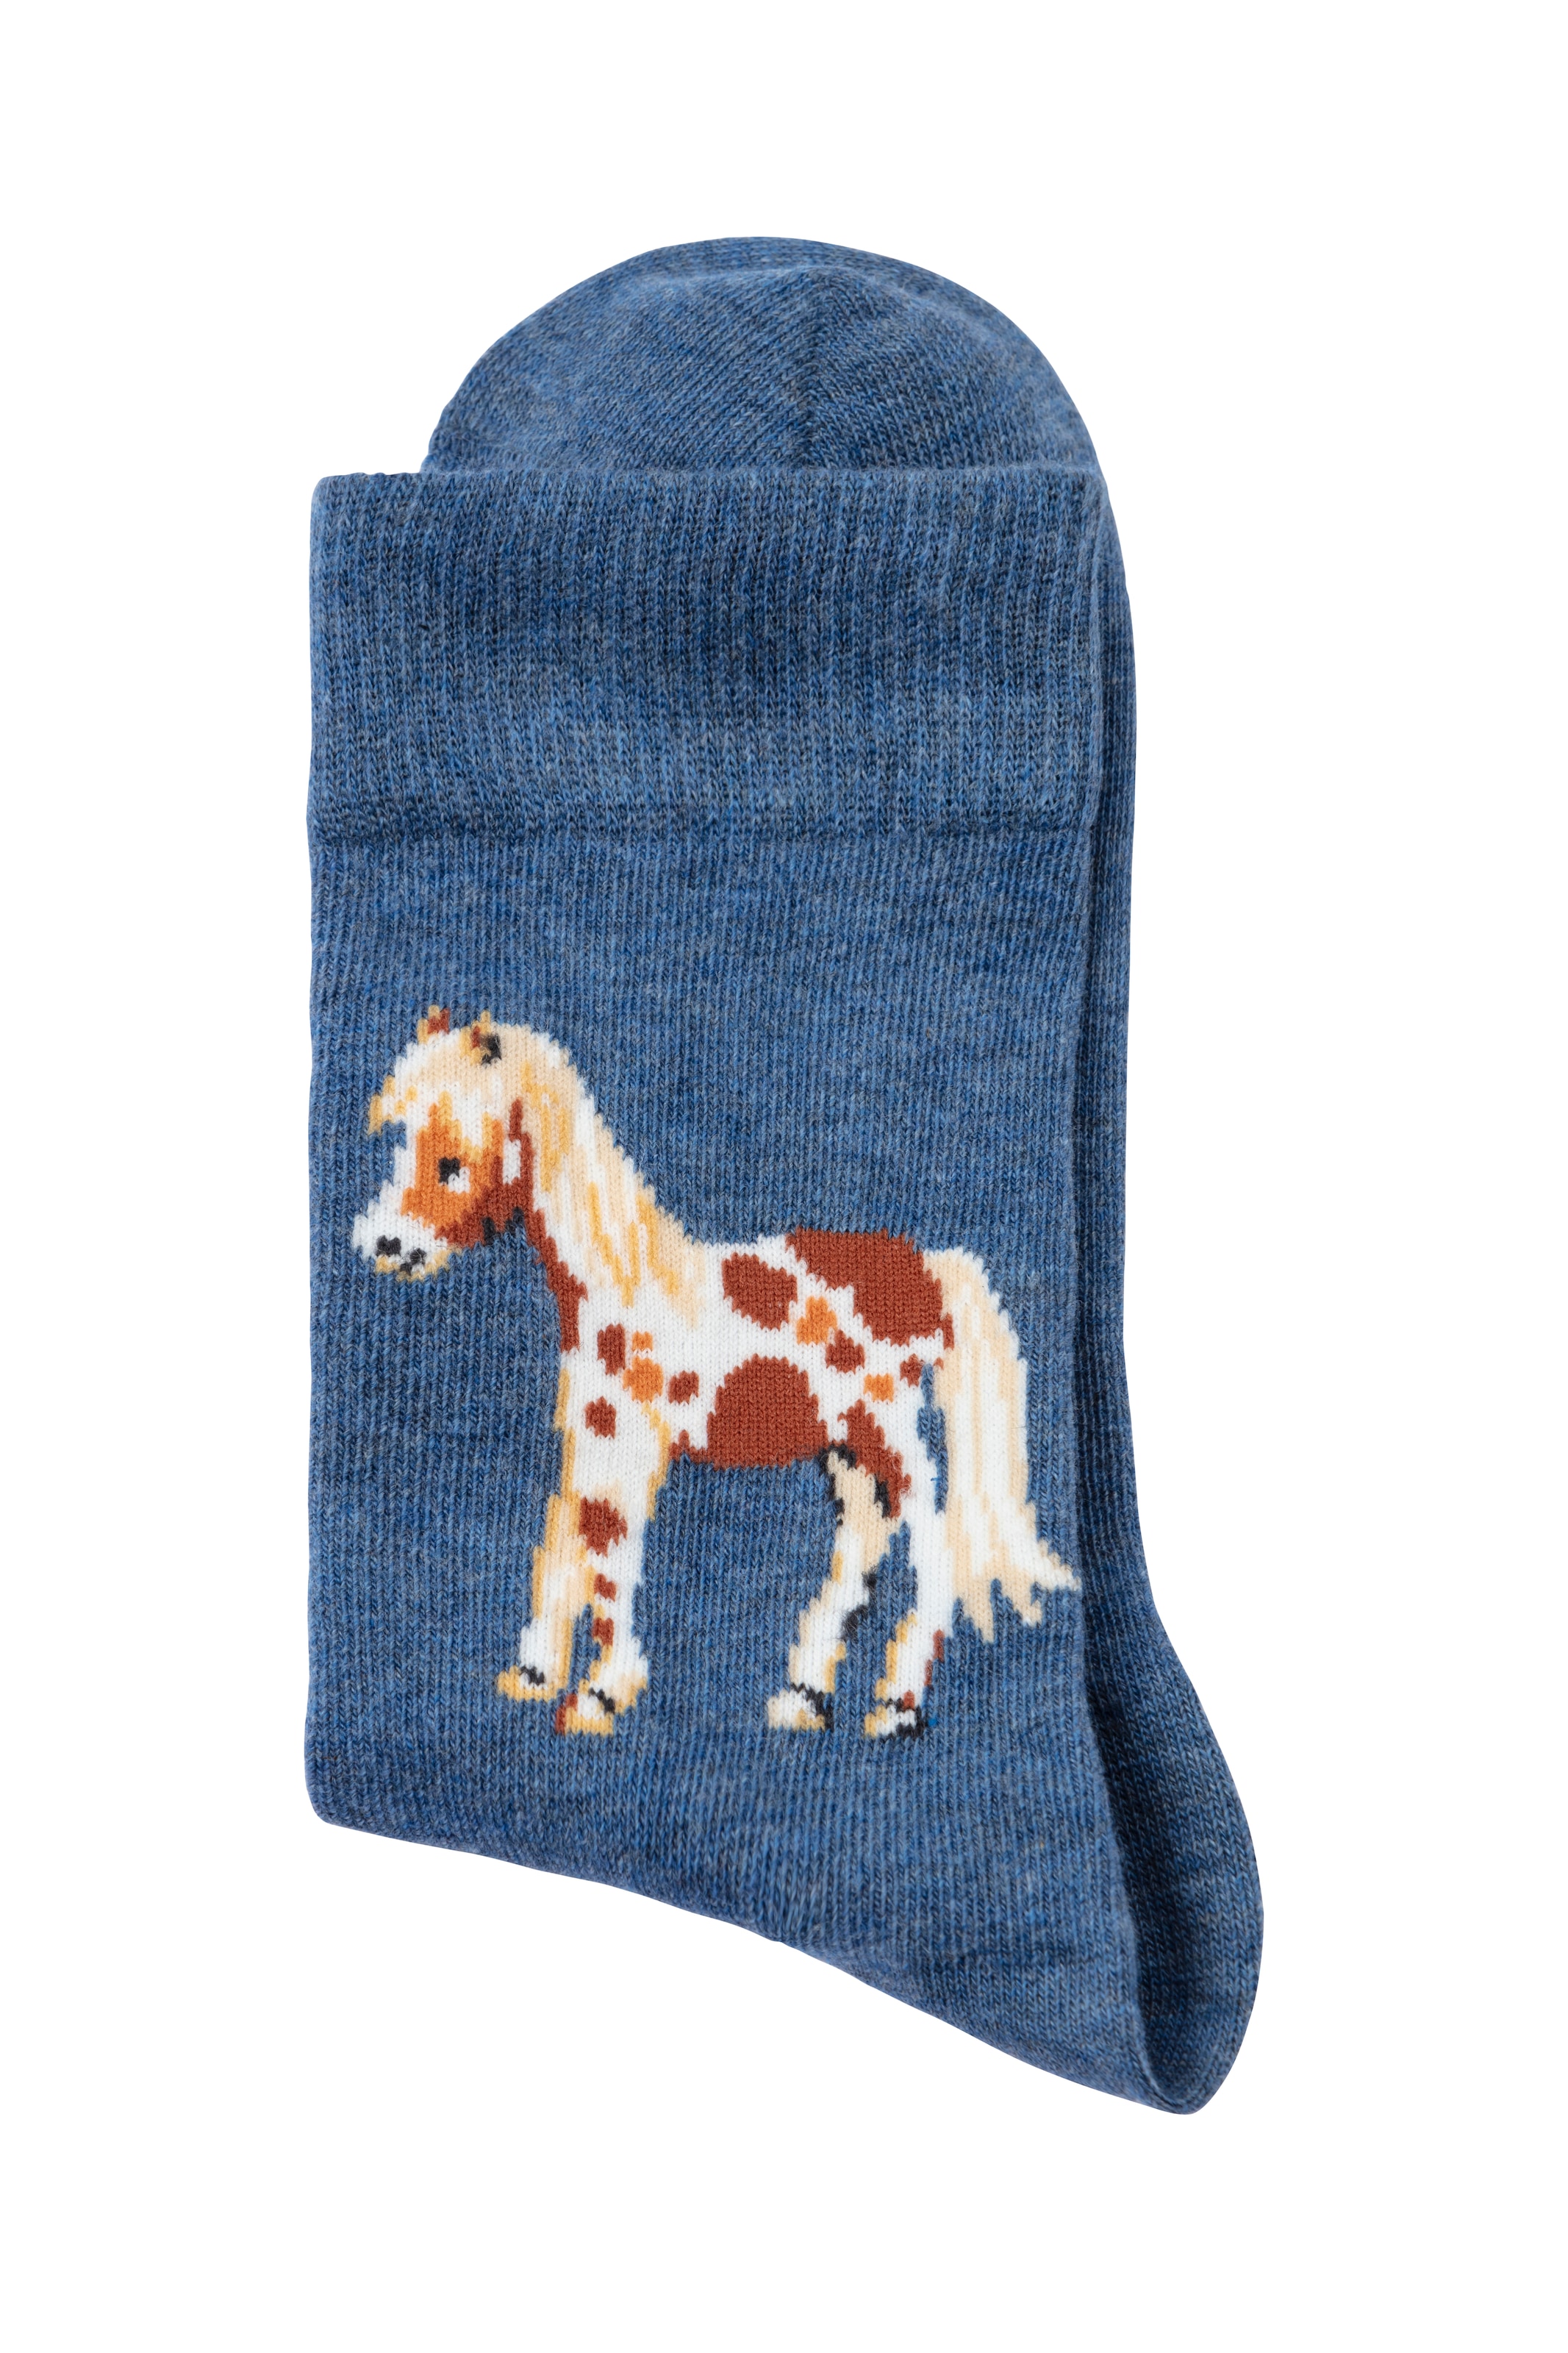 H.I.S Socken, (Packung, 5 Paar), Mit unterschiedlichen Pferdemotiven